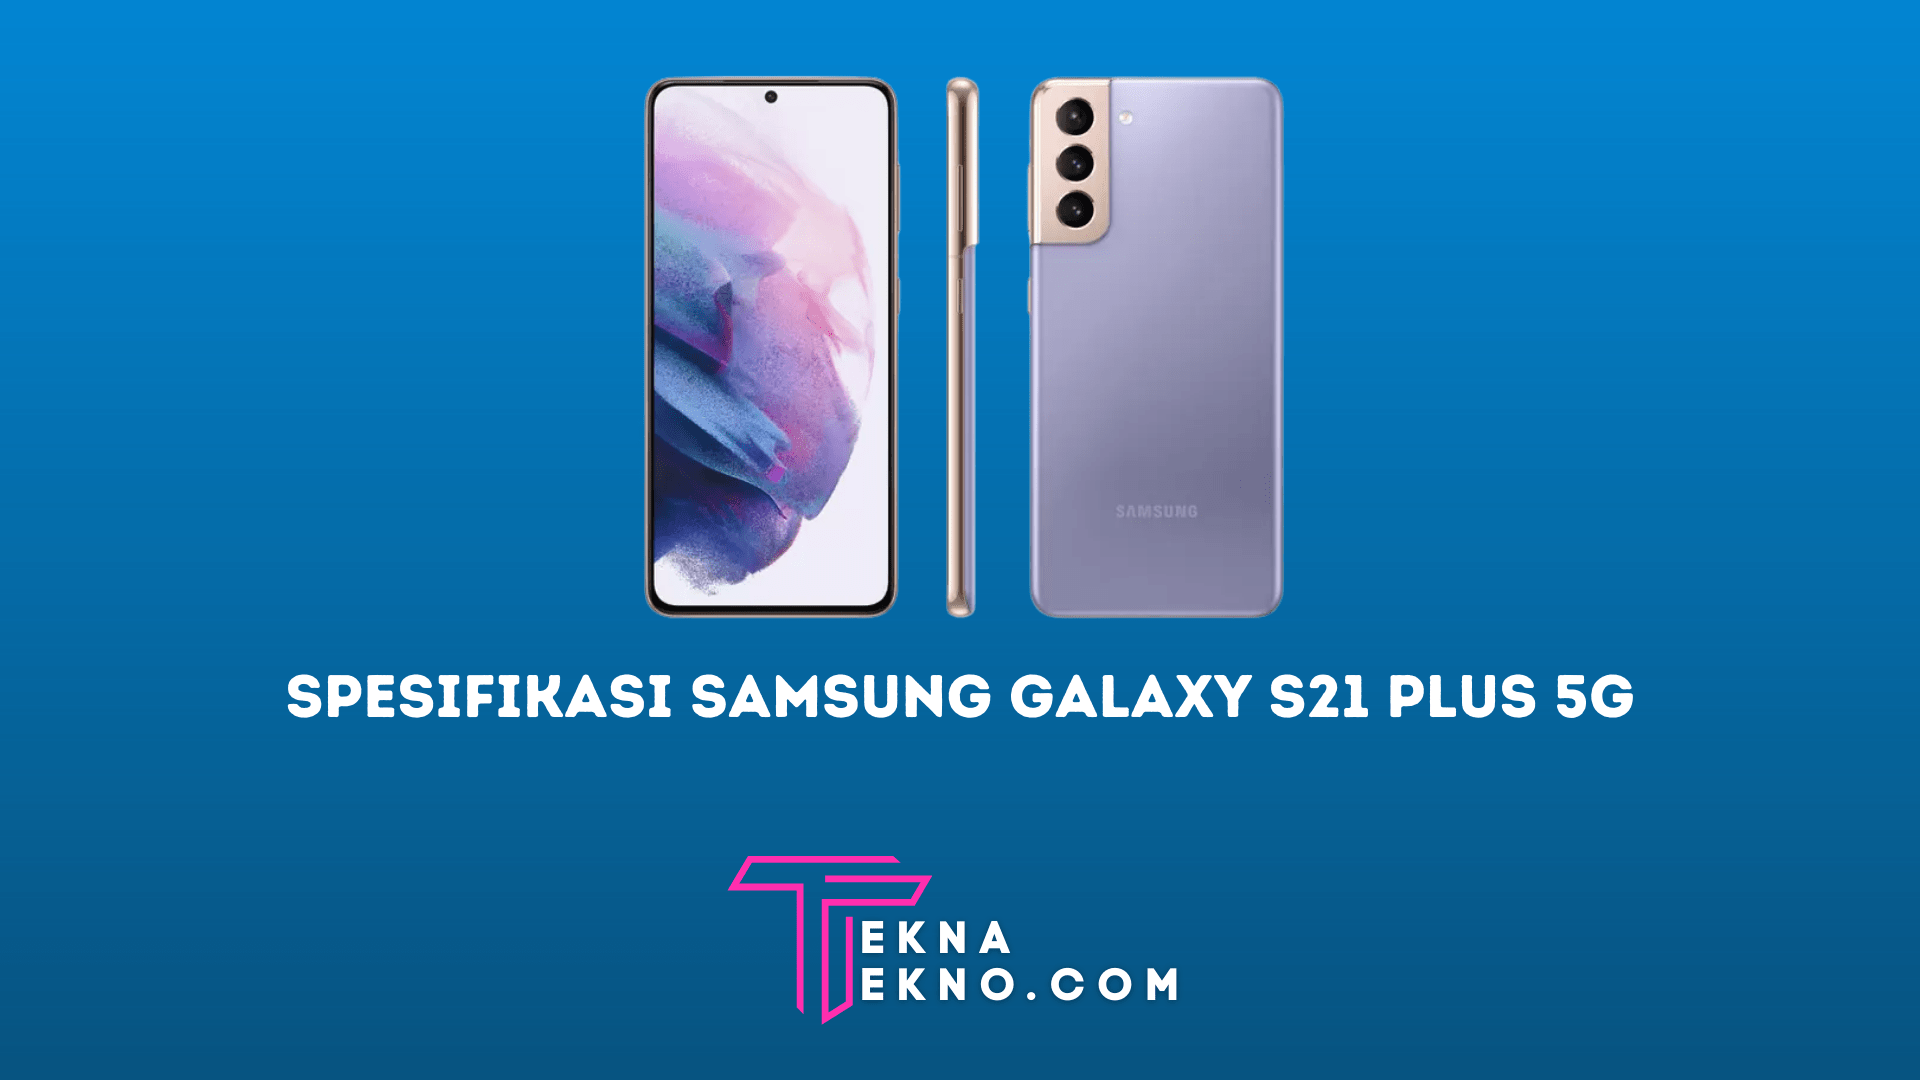 Spesifikasi Samsung Galaxy S21 Plus 5G dan Harga Terbaru